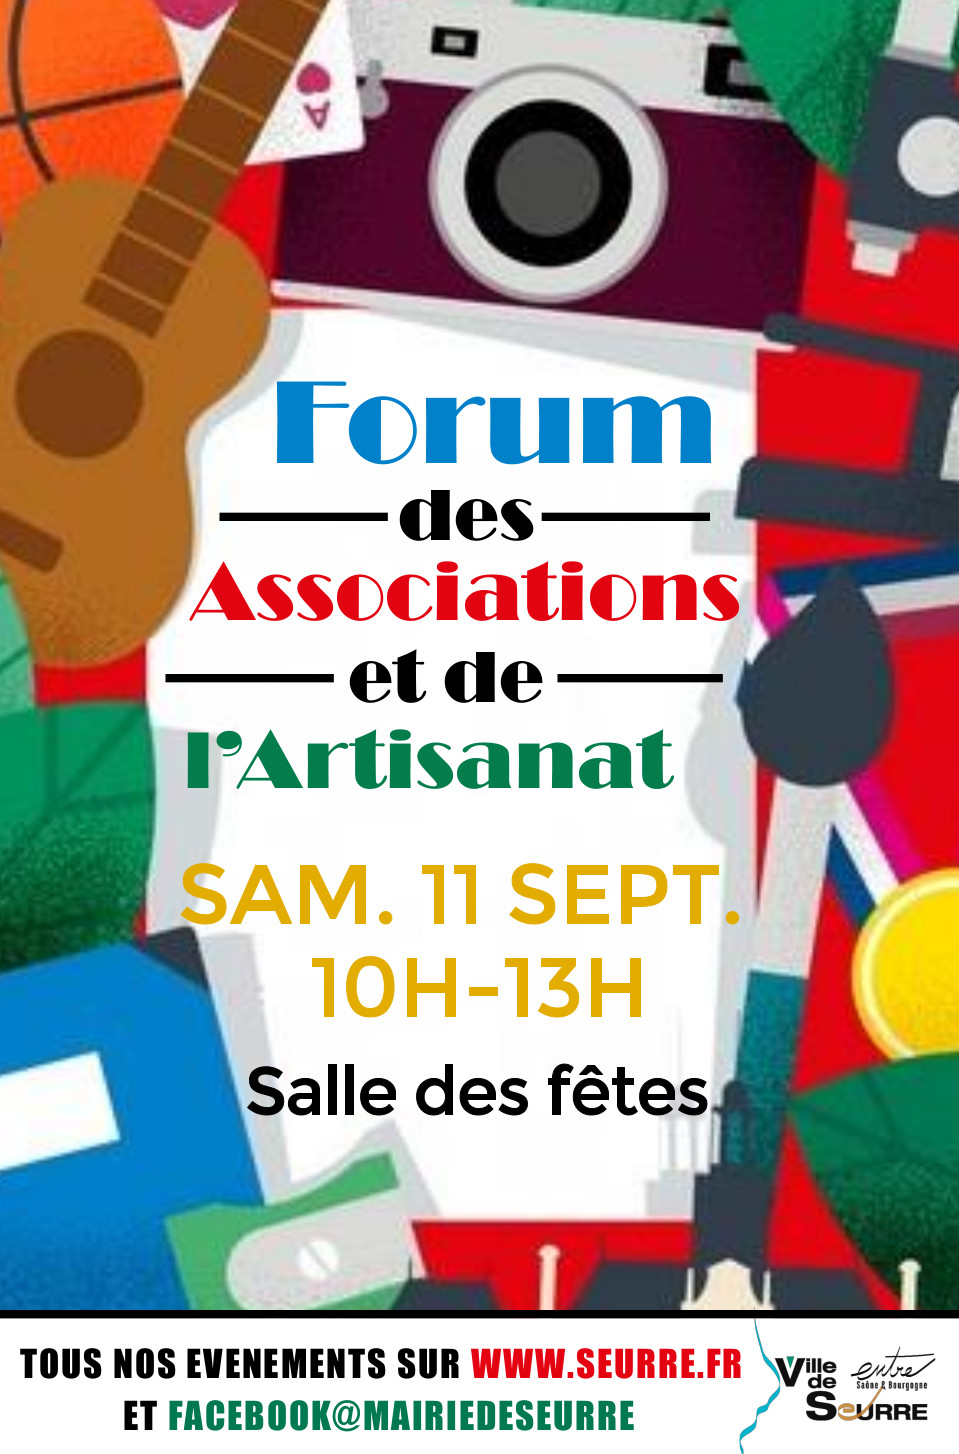 Forum des associations et de l'artisanat